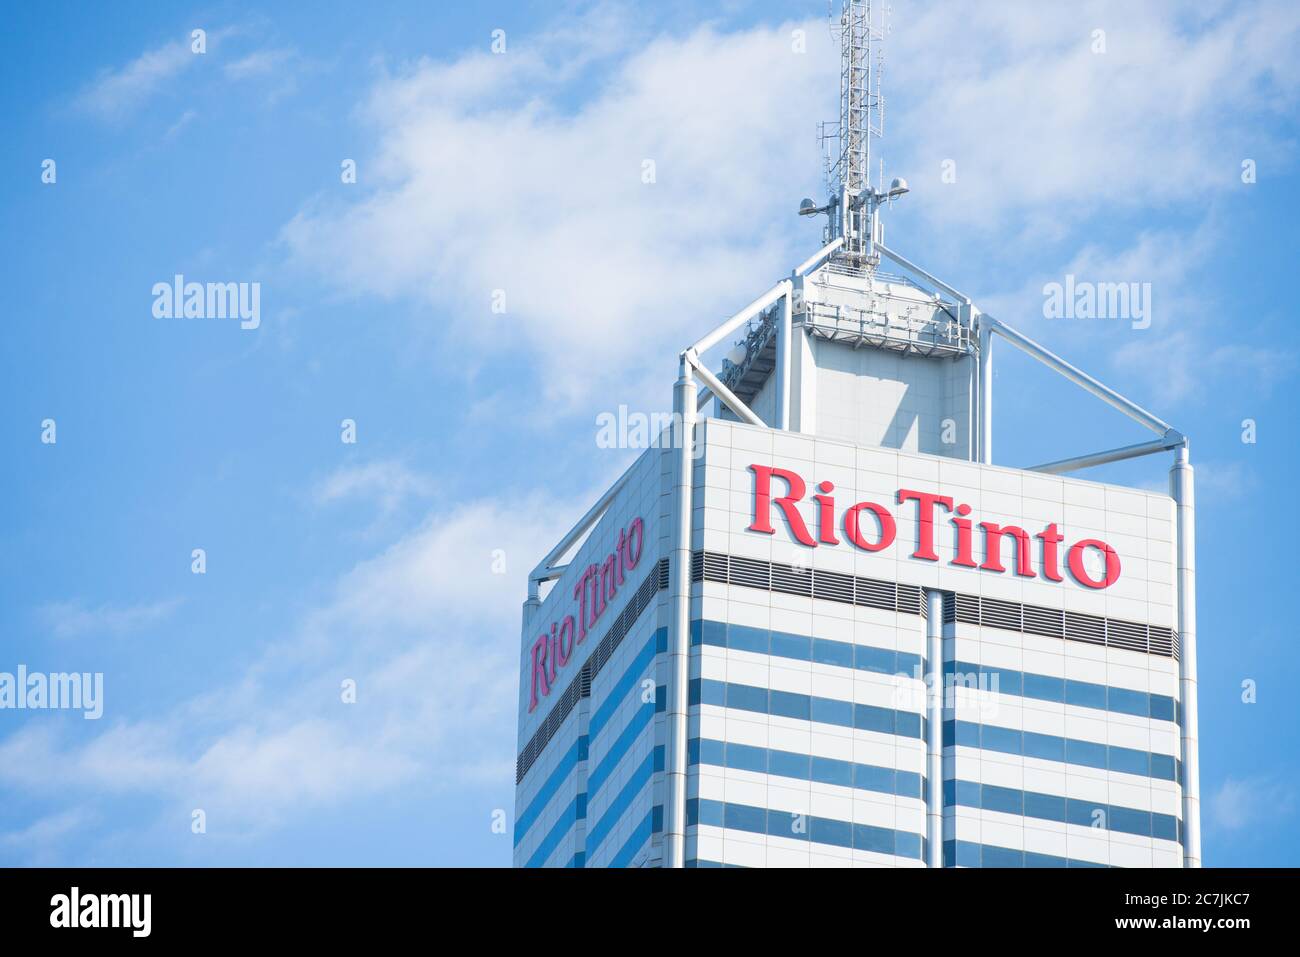 Perth, Western Australia - 3. Februar 2017: Bürogebäude Rio Tinto, eines der größten Bergbauunternehmen der Welt, mit regionalem Hauptsitz in Stockfoto